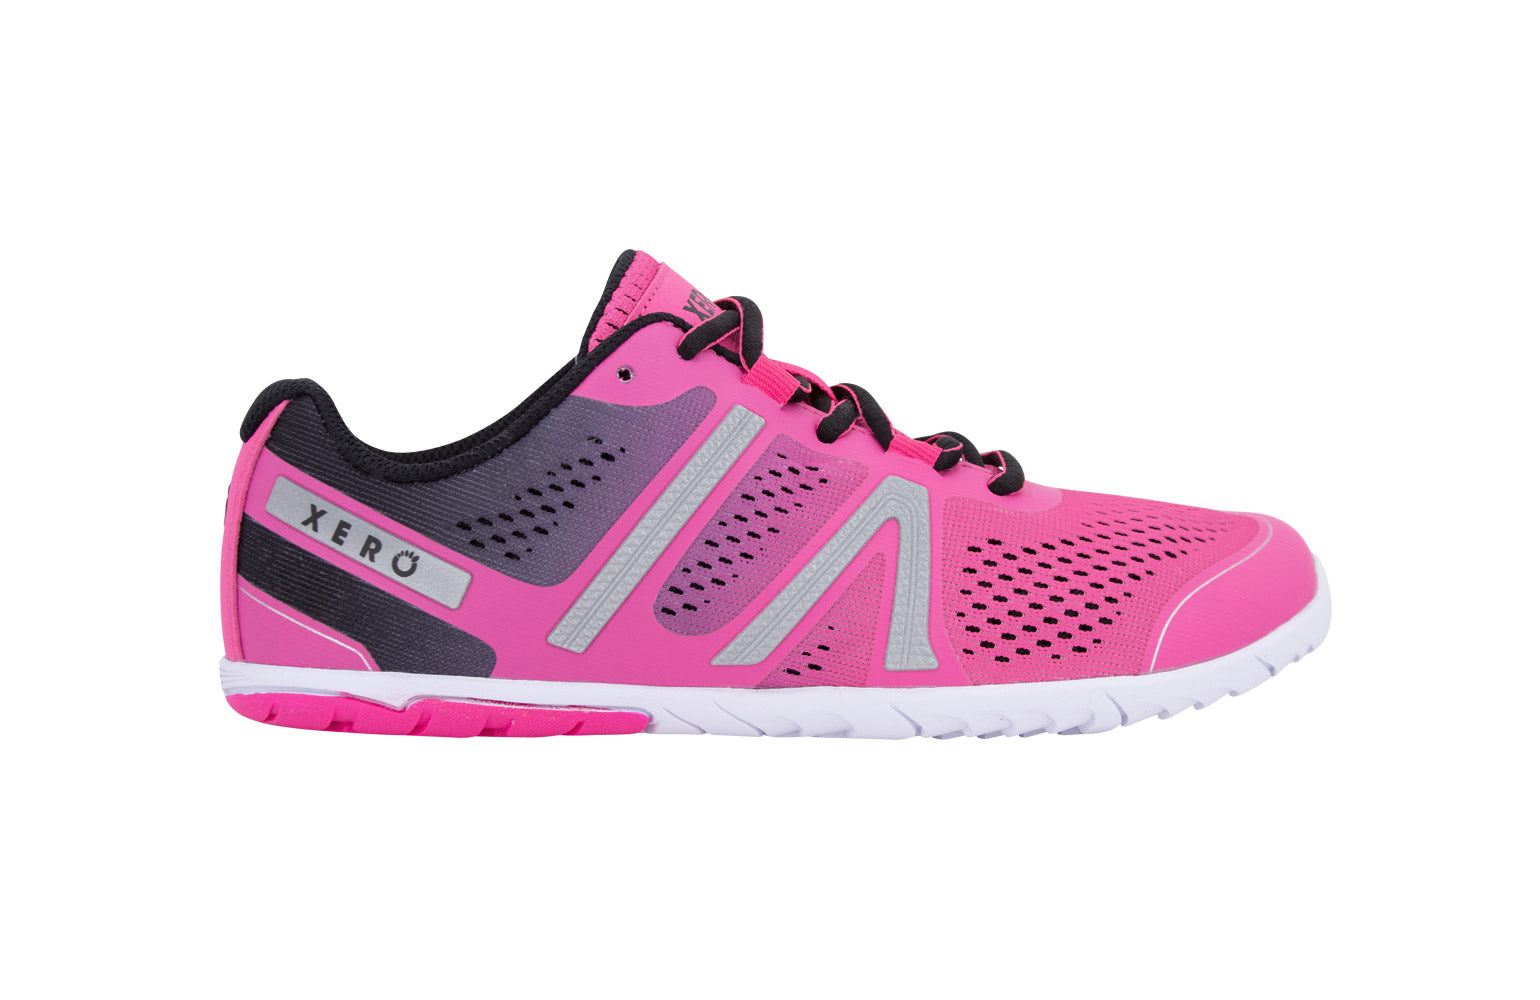 Xero Shoes HFS Womens barfods træningssko/løbesko til kvinder i farven pink glow, yderside